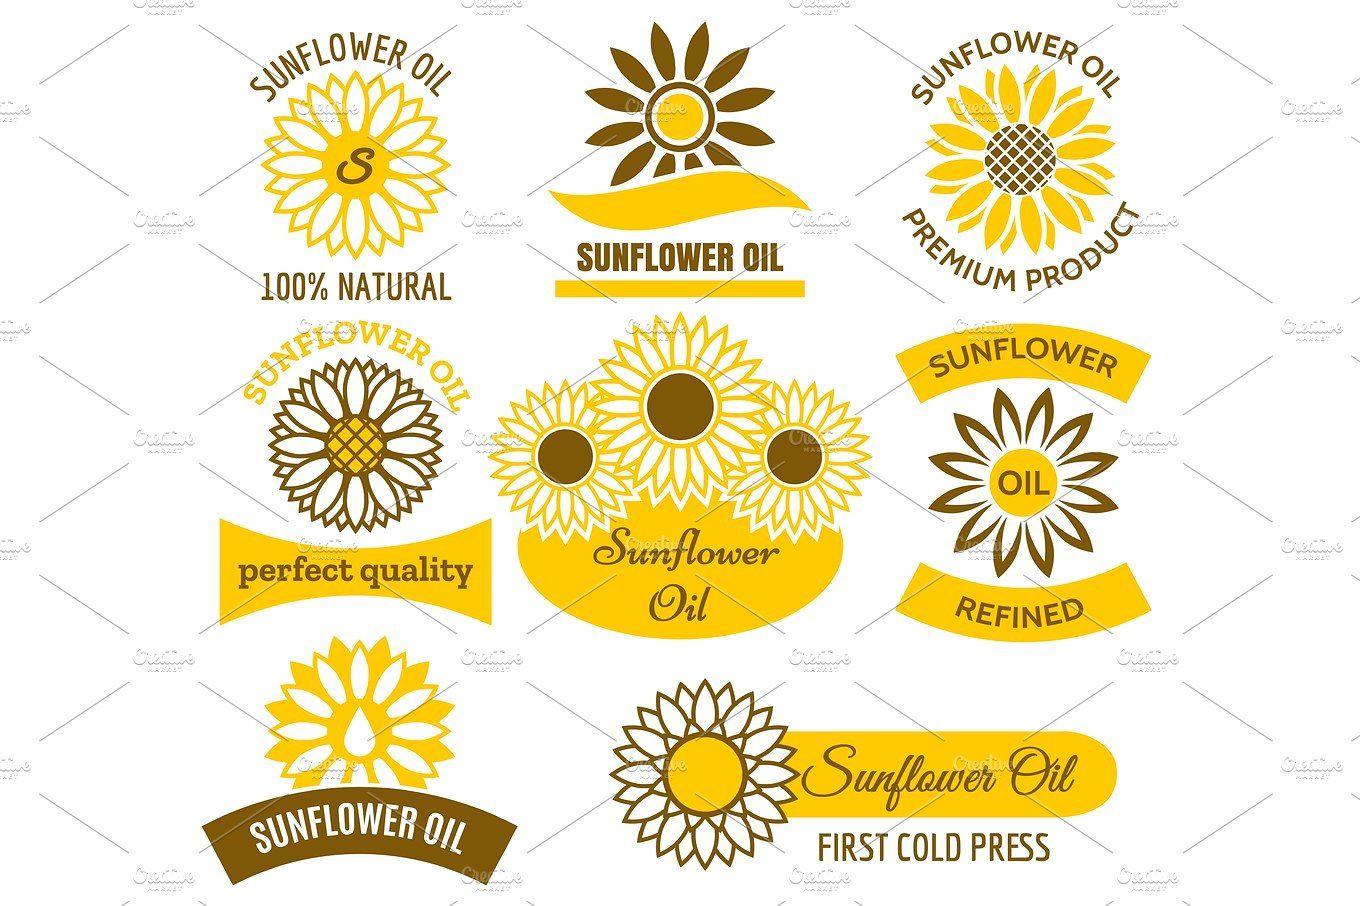 Sunflower Logo - Sunflower oil logo set Illustrations Creative Market